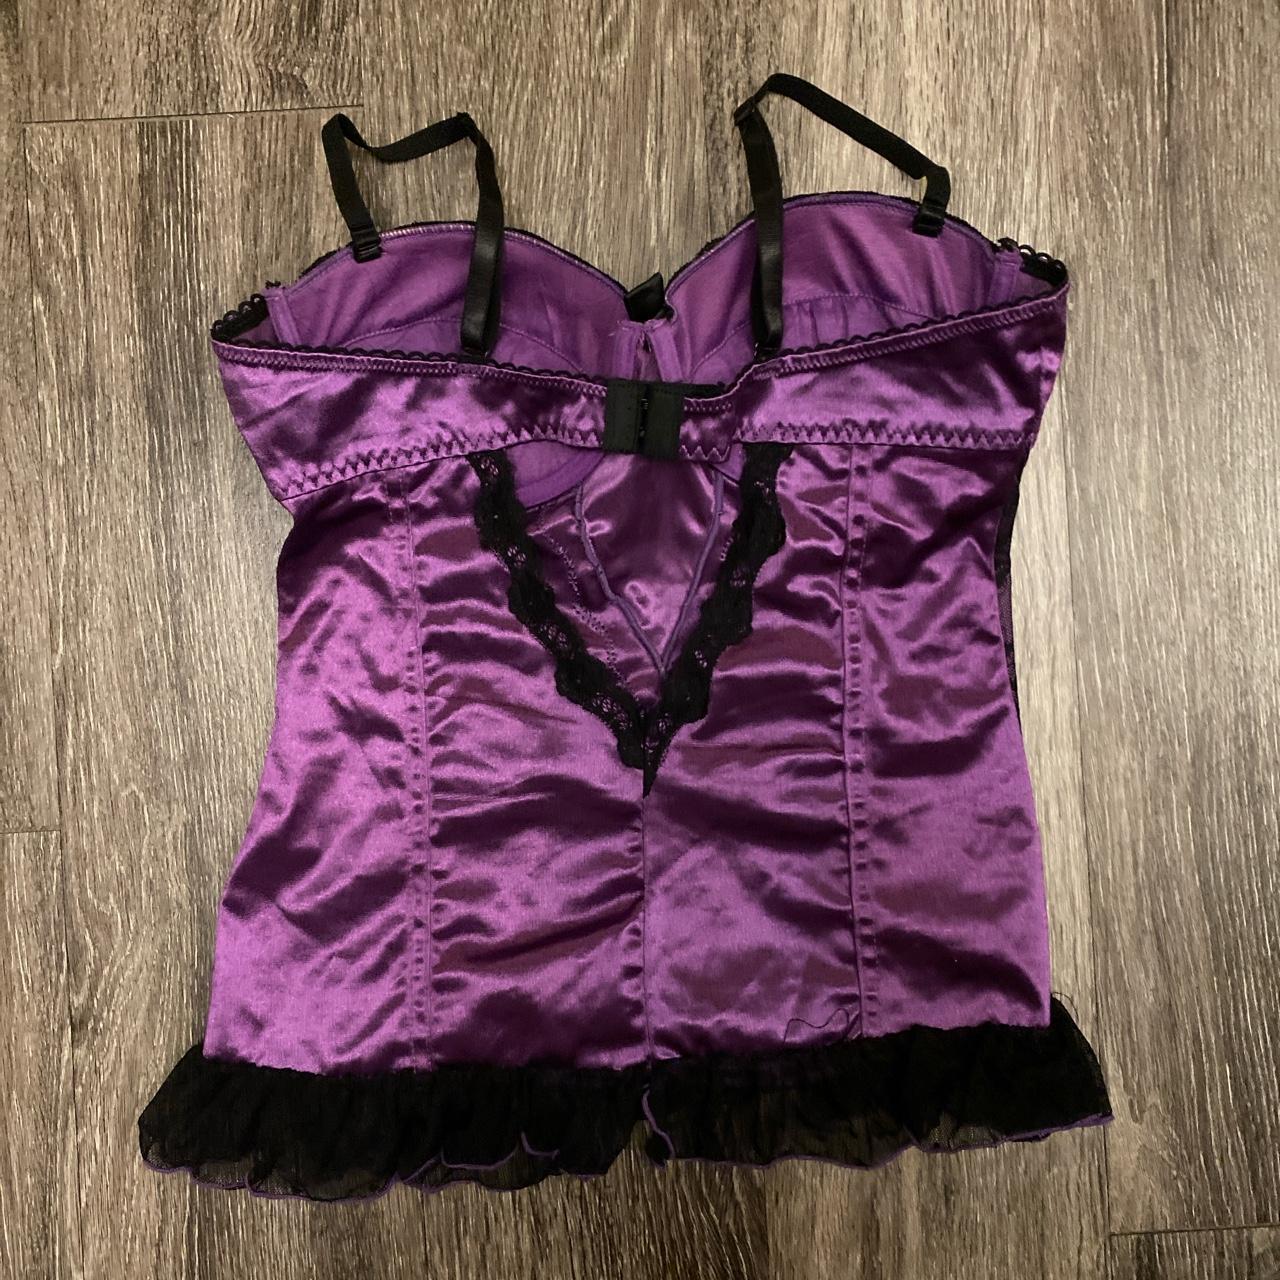 Product Image 3 - Purple lace corset lingerie top!